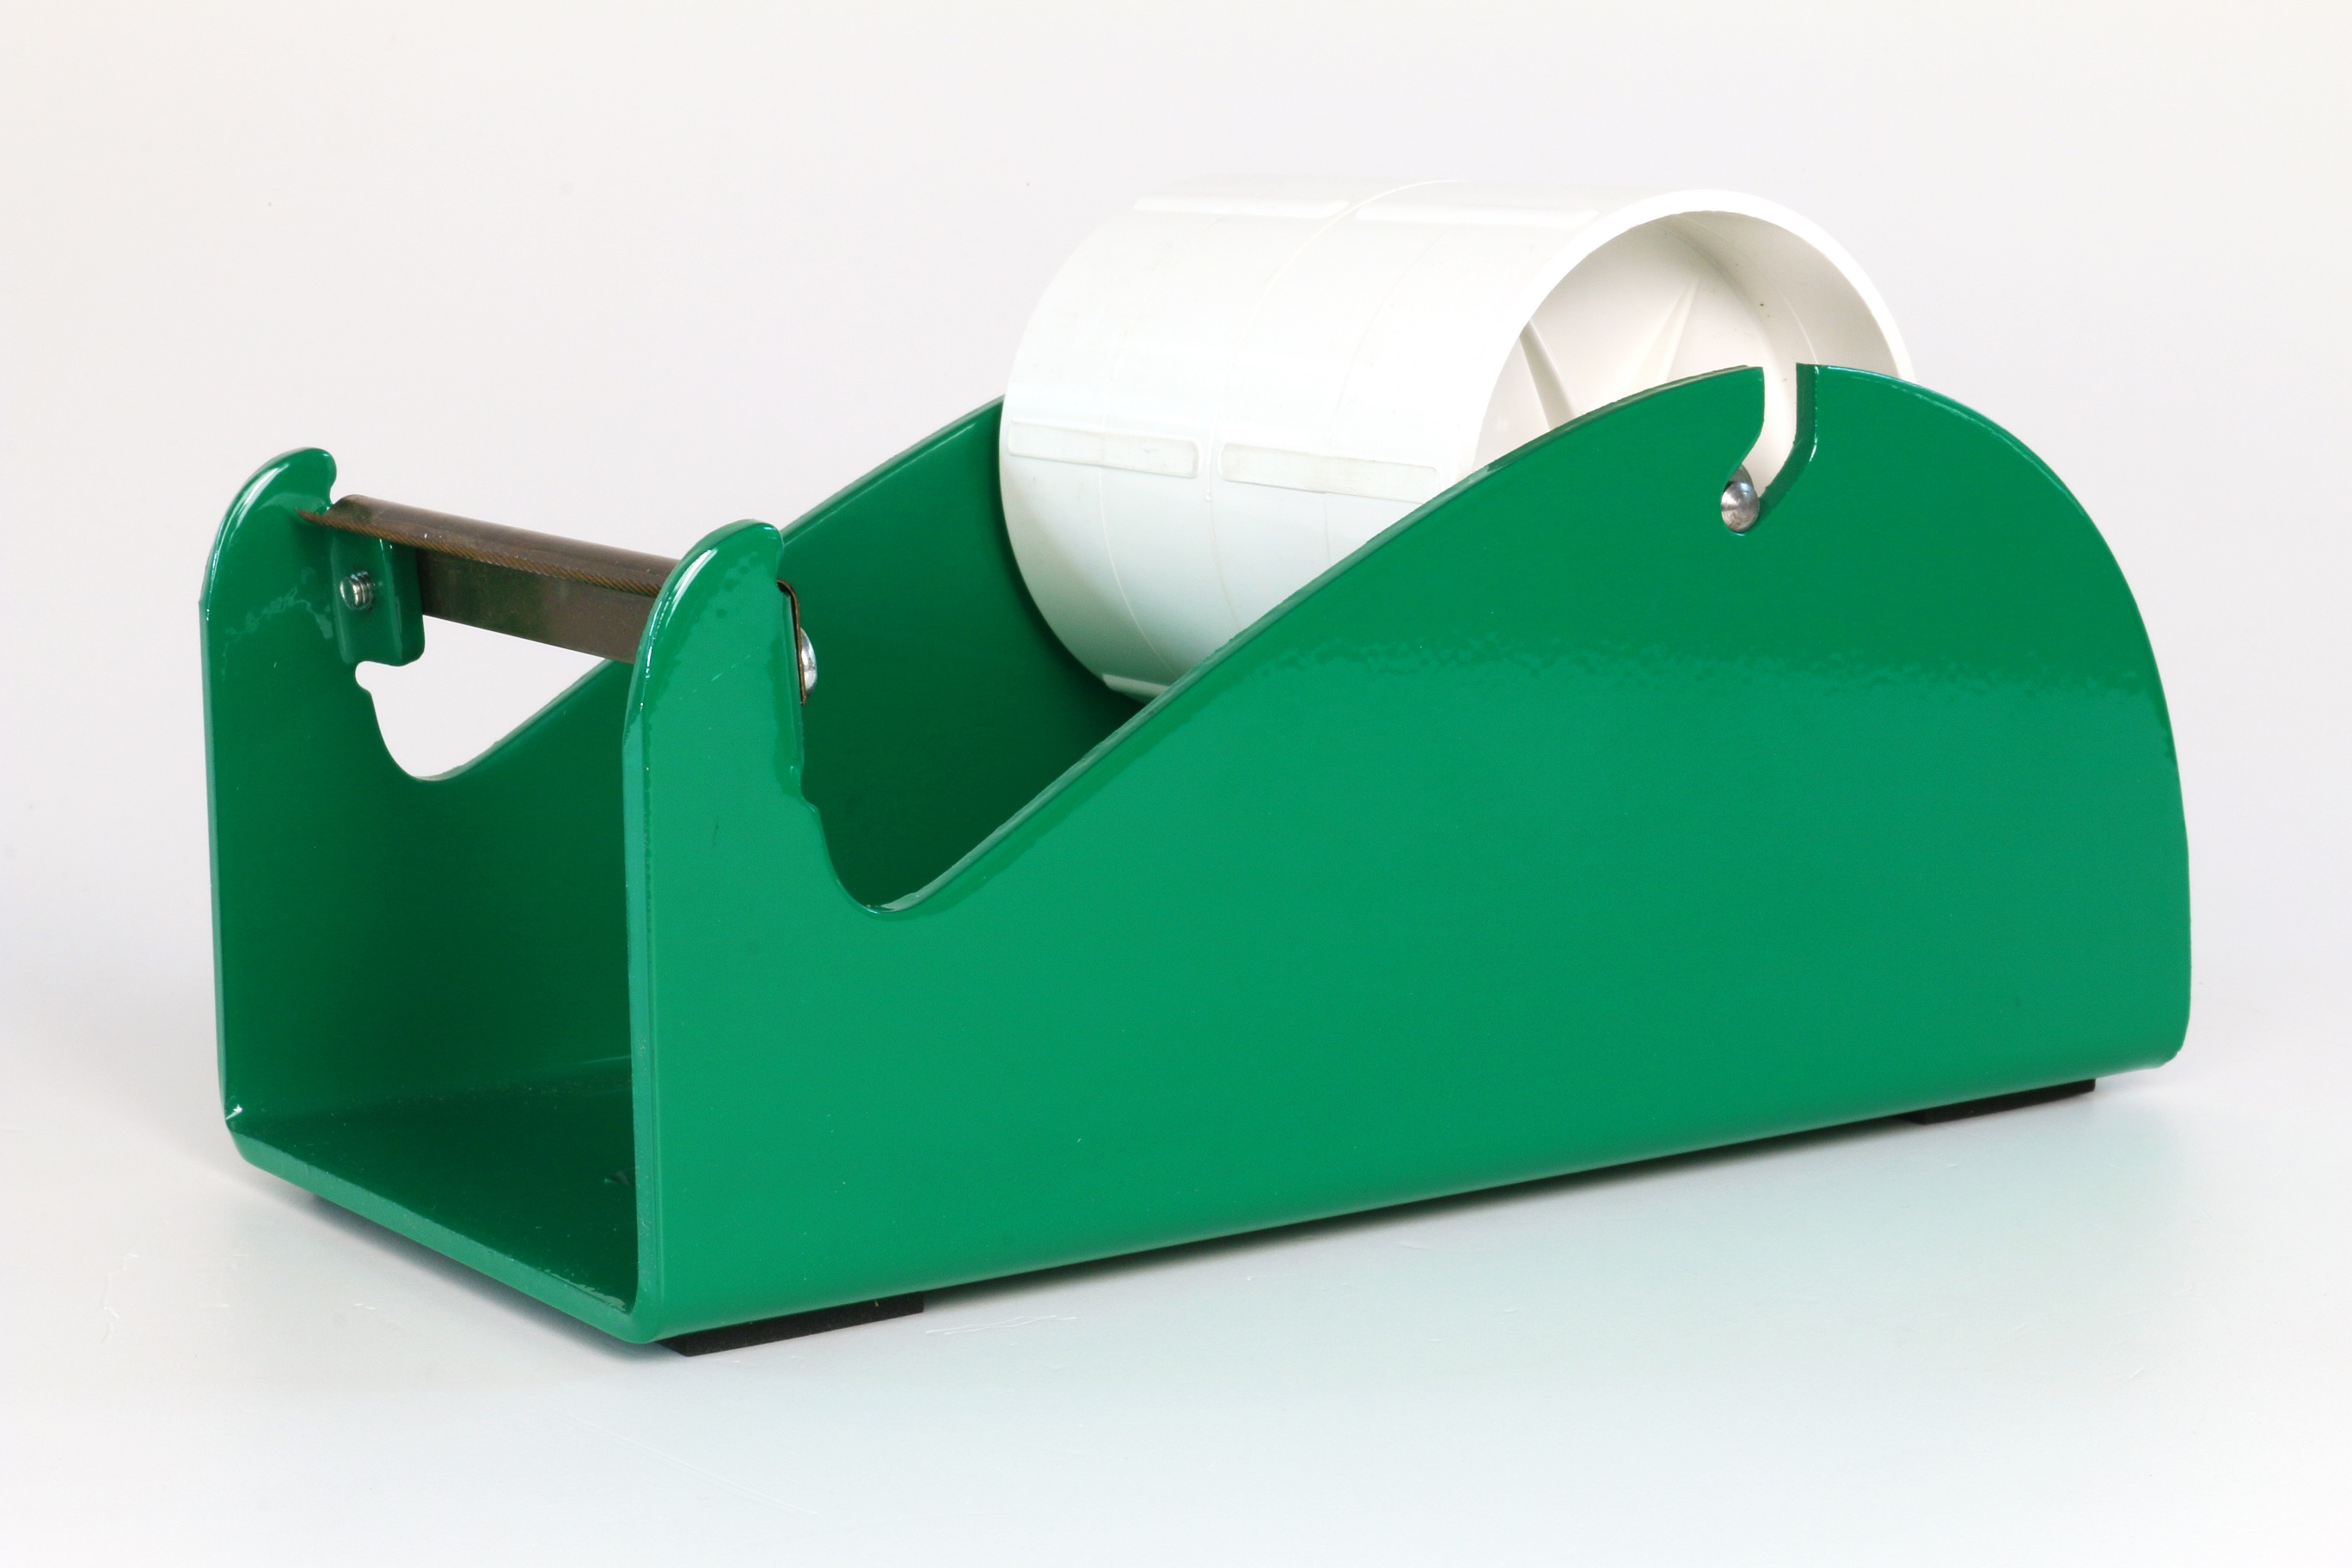 Klebeband-Tischabroller Grün, für 1-4 Rollen, 4 x 25mm Bandbreite, 145mm Außendurchmesser